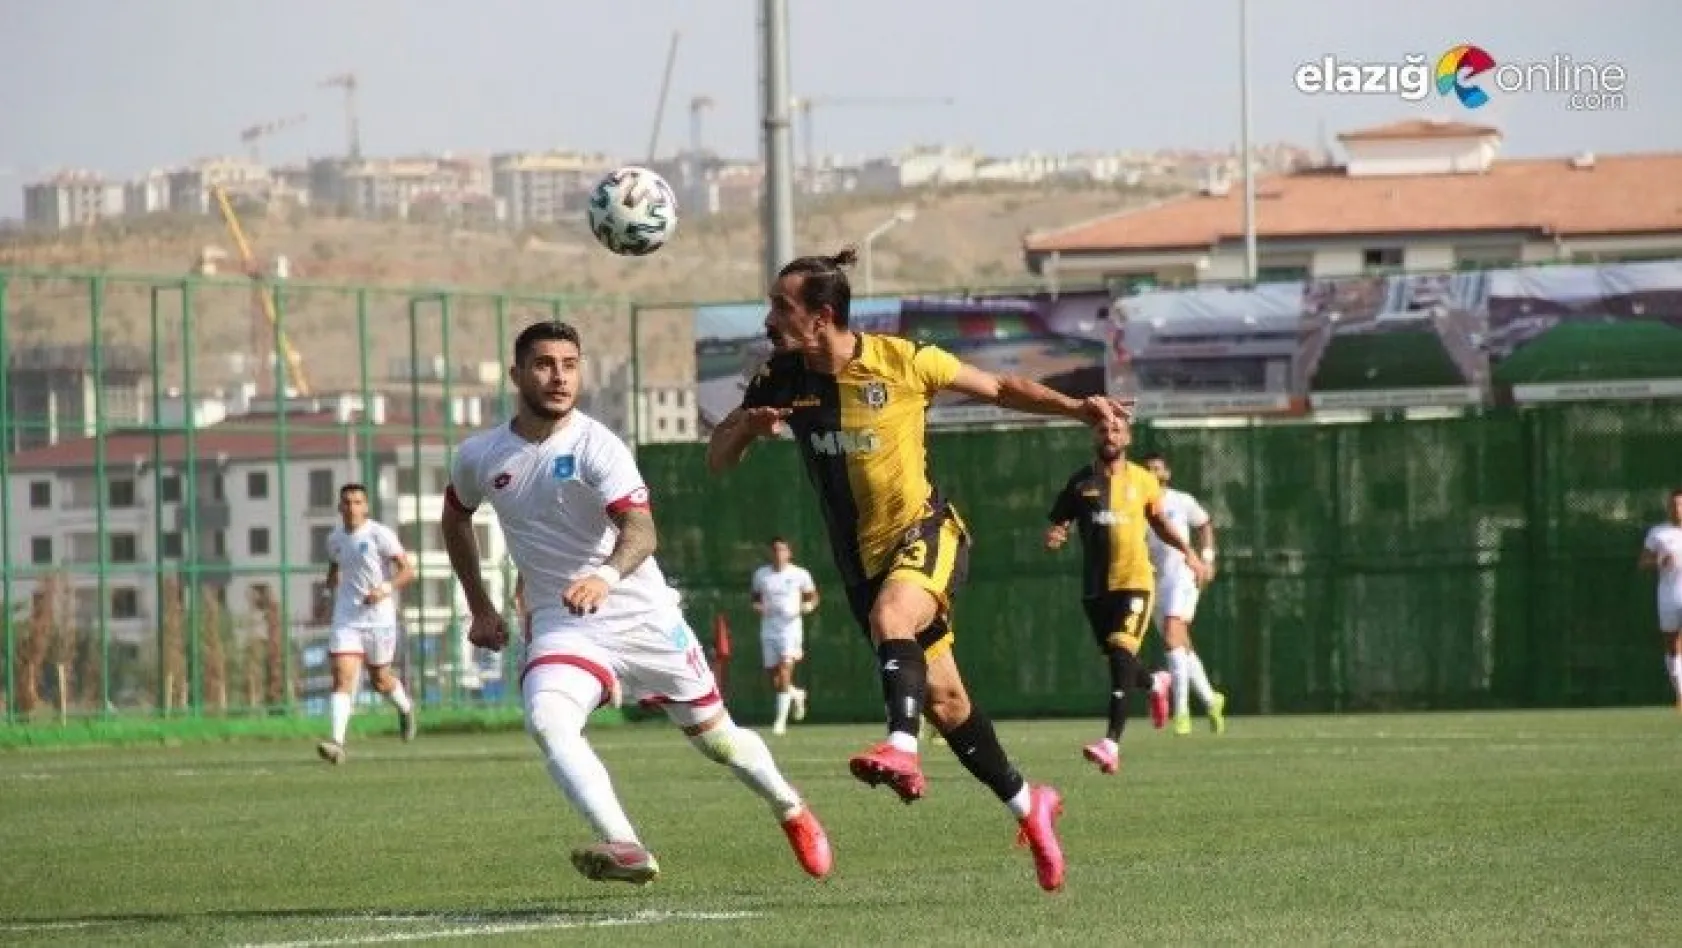 Elazığ Karakoçan Futbol Kulübü, Galibiyetle Başladı